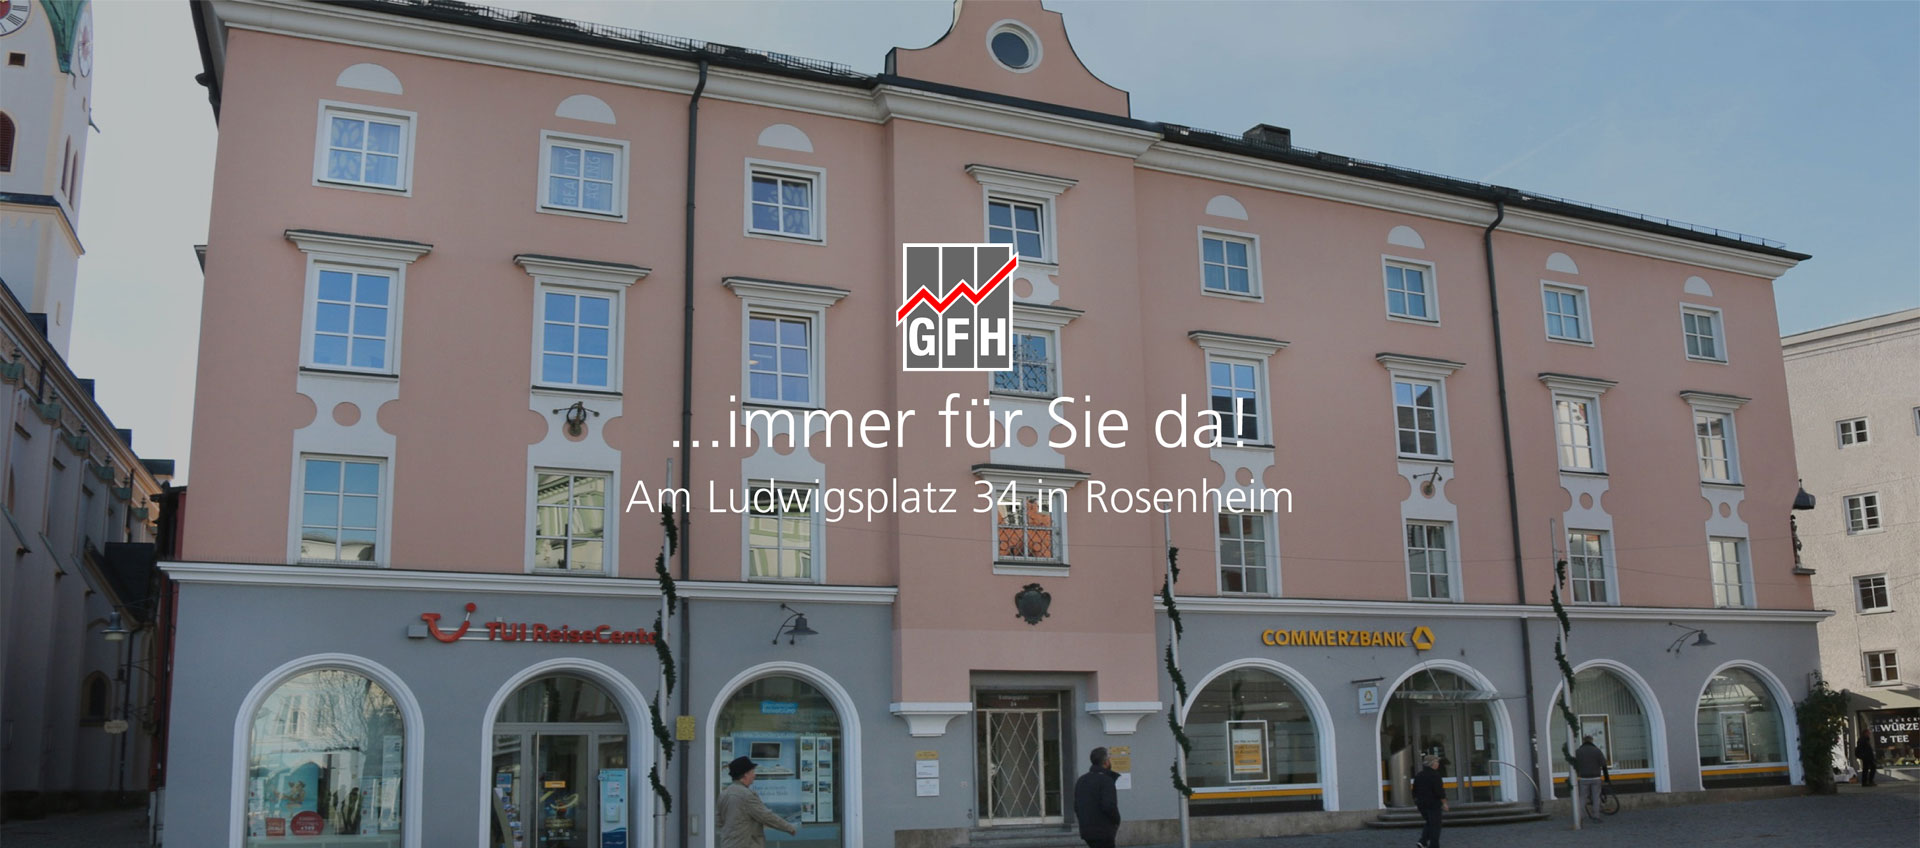 GFH Immobilien in Rosenheim